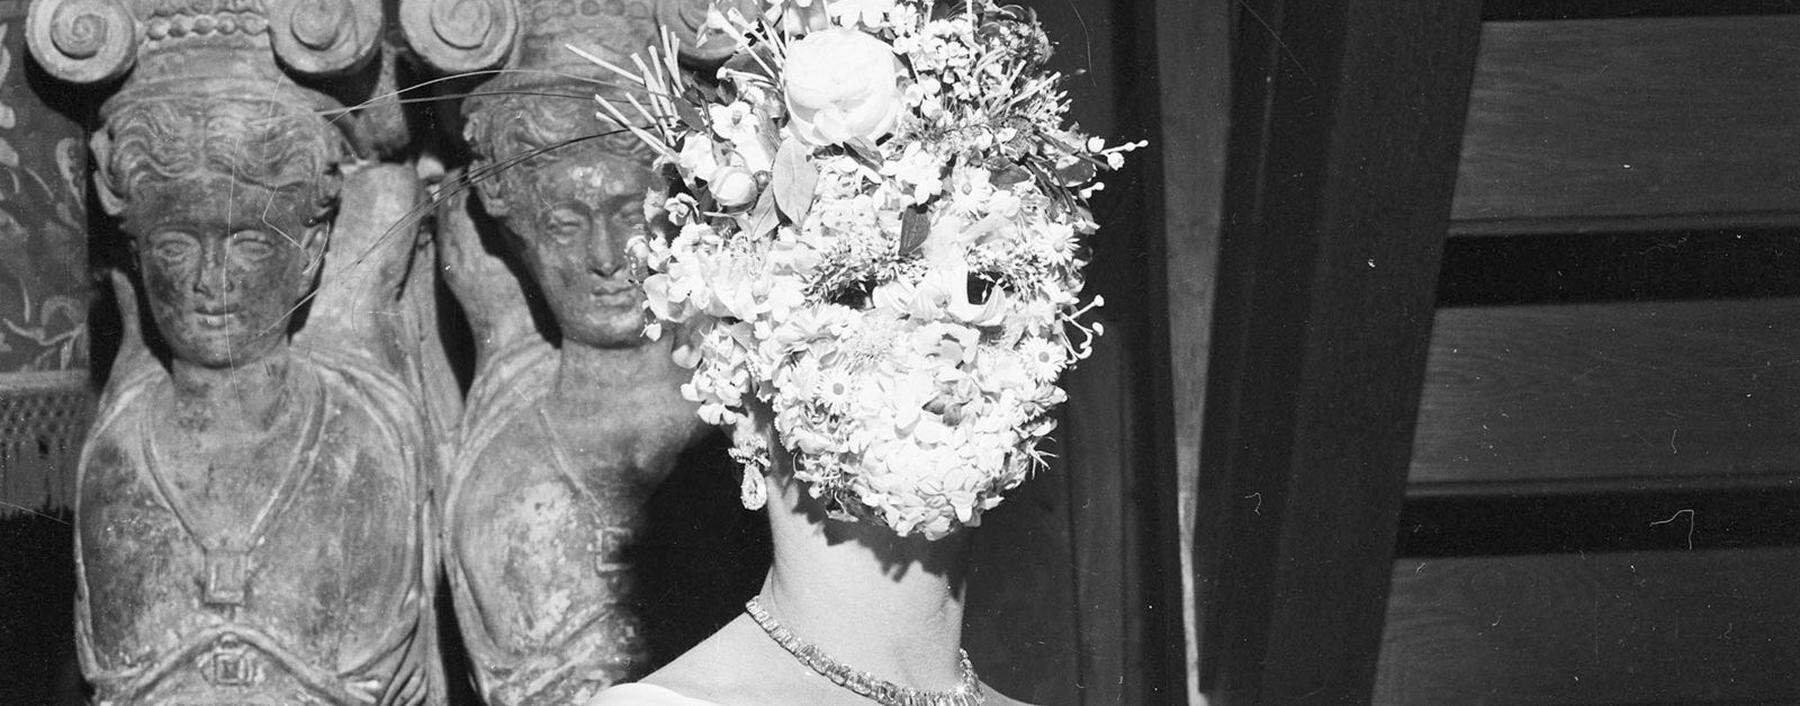 Der „Bal oriental“ des Mexikaners Carlos de Beistegui, 1951 in Venedig abgehalten, gilt als „Party des 20. Jahrhunderts“ für die Reichen und Schönen.